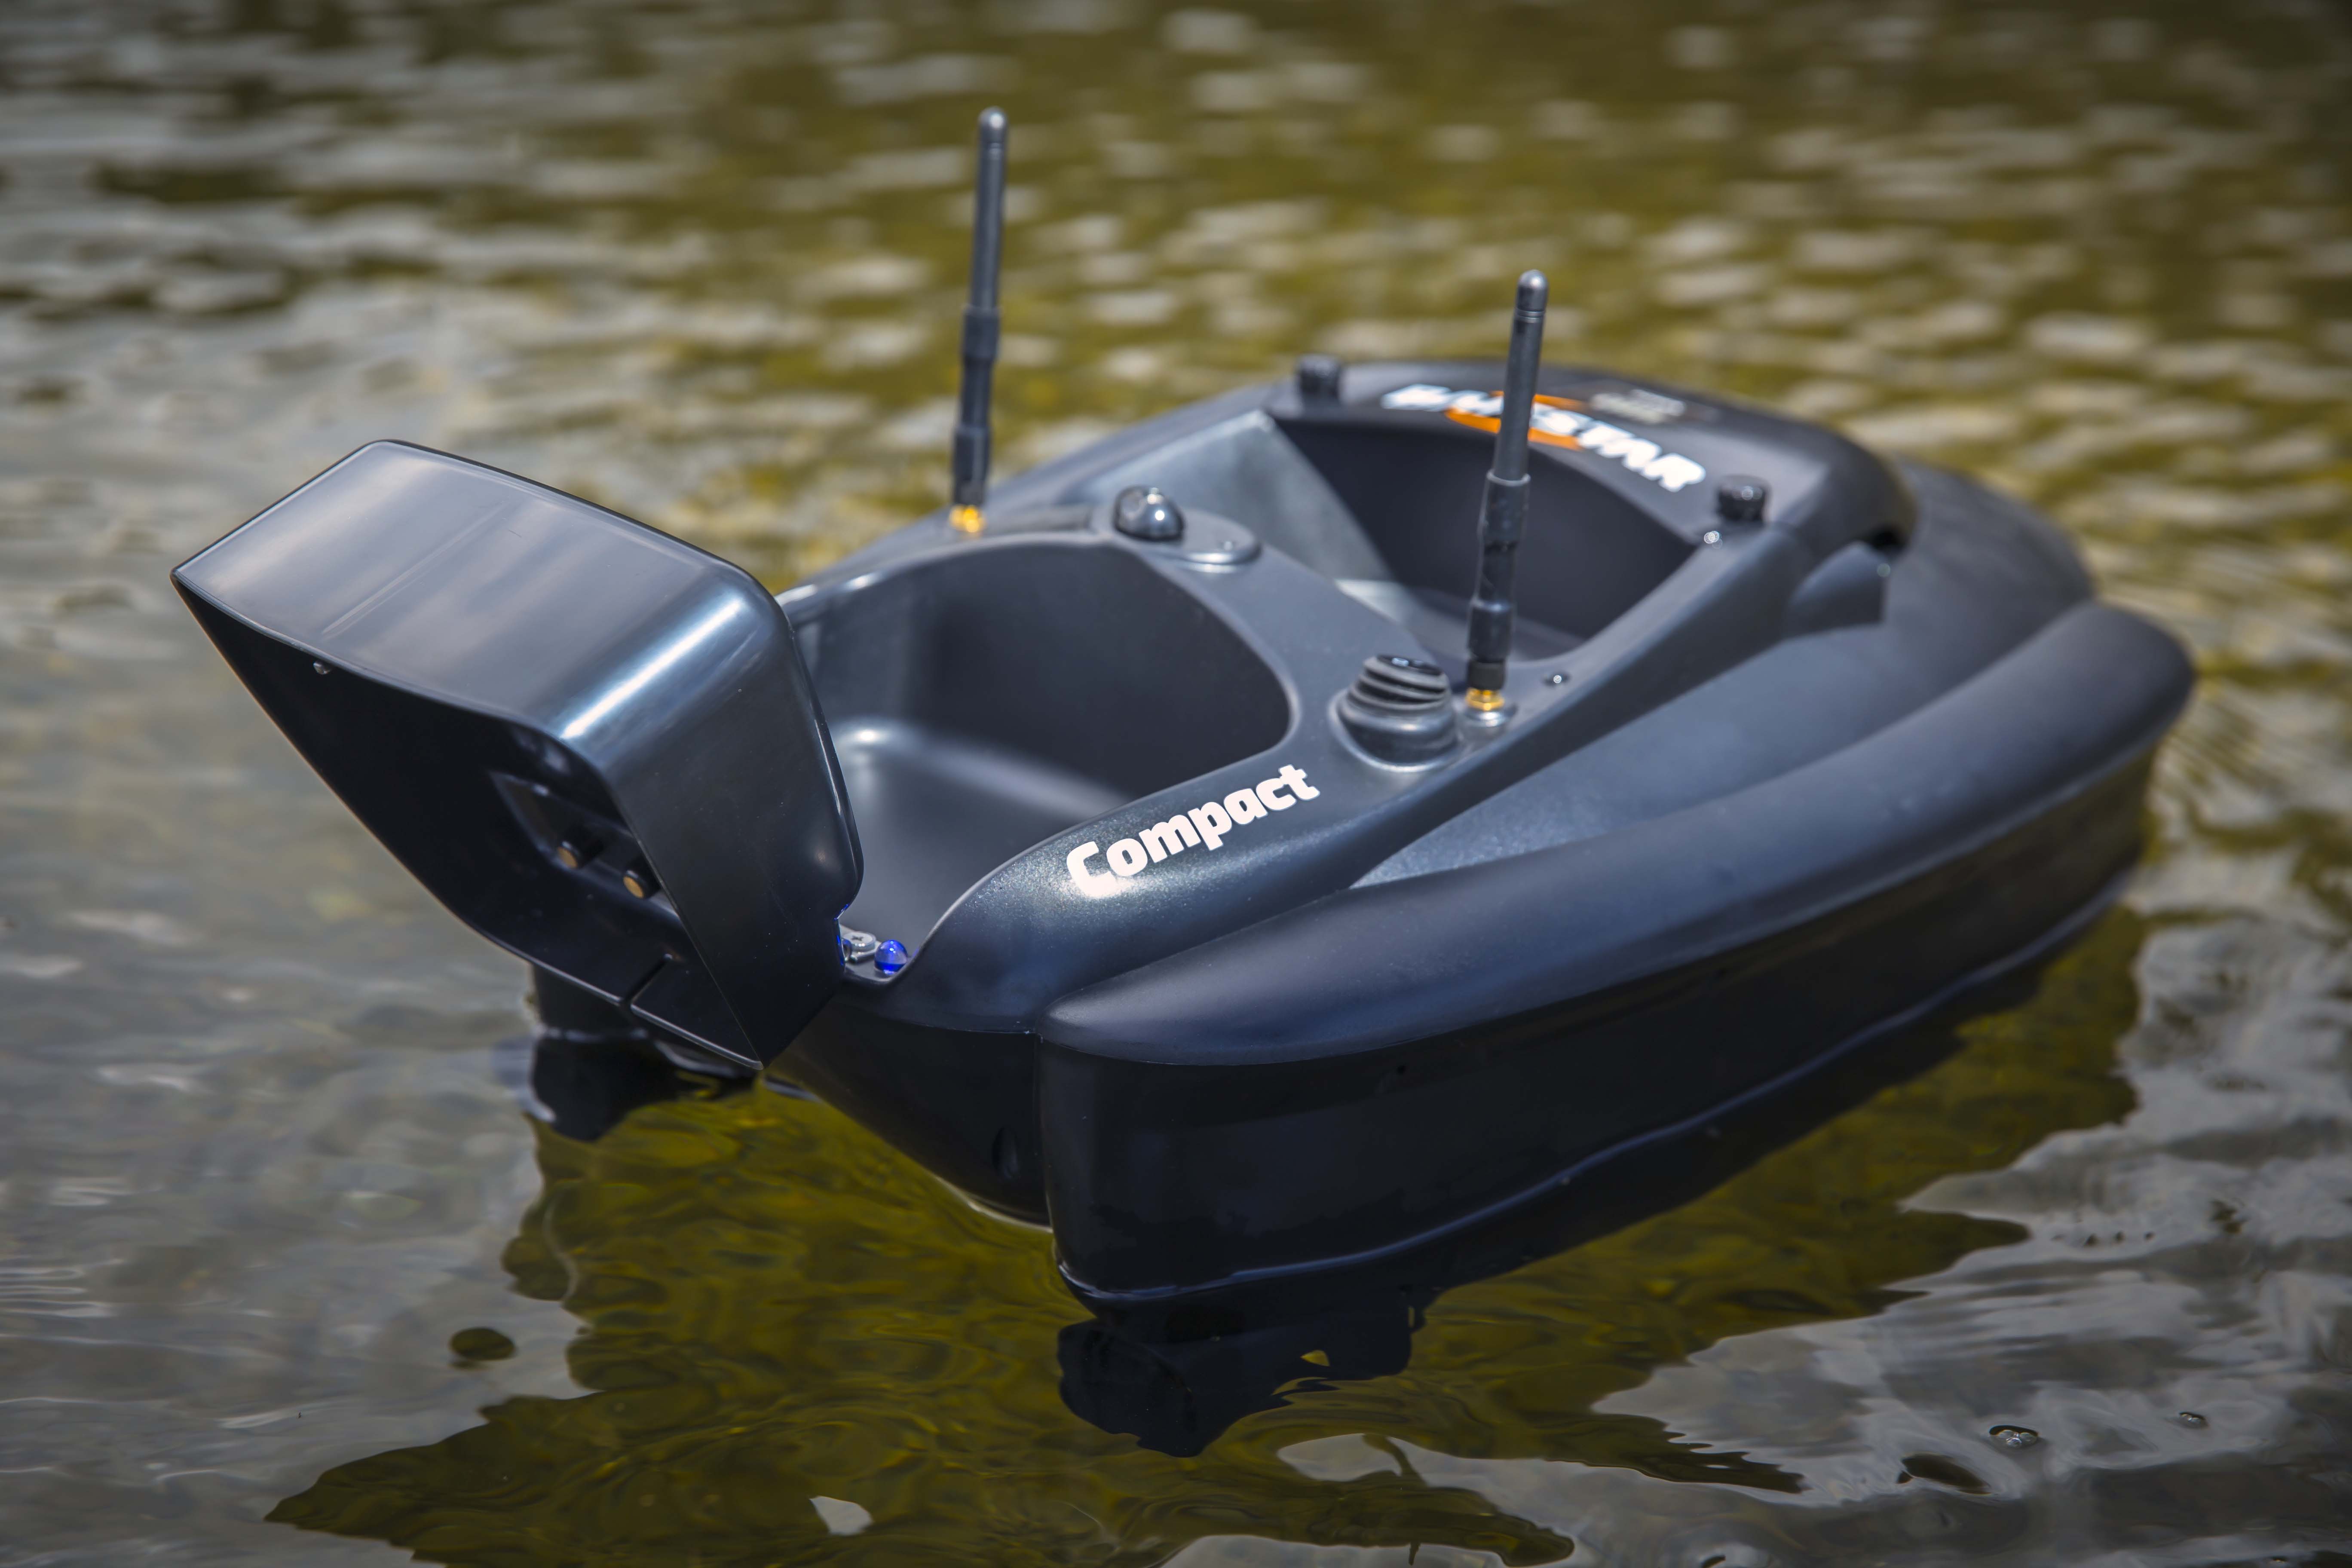 BaitStar Voerboot Compact Black + Sonartab Dieptemeter